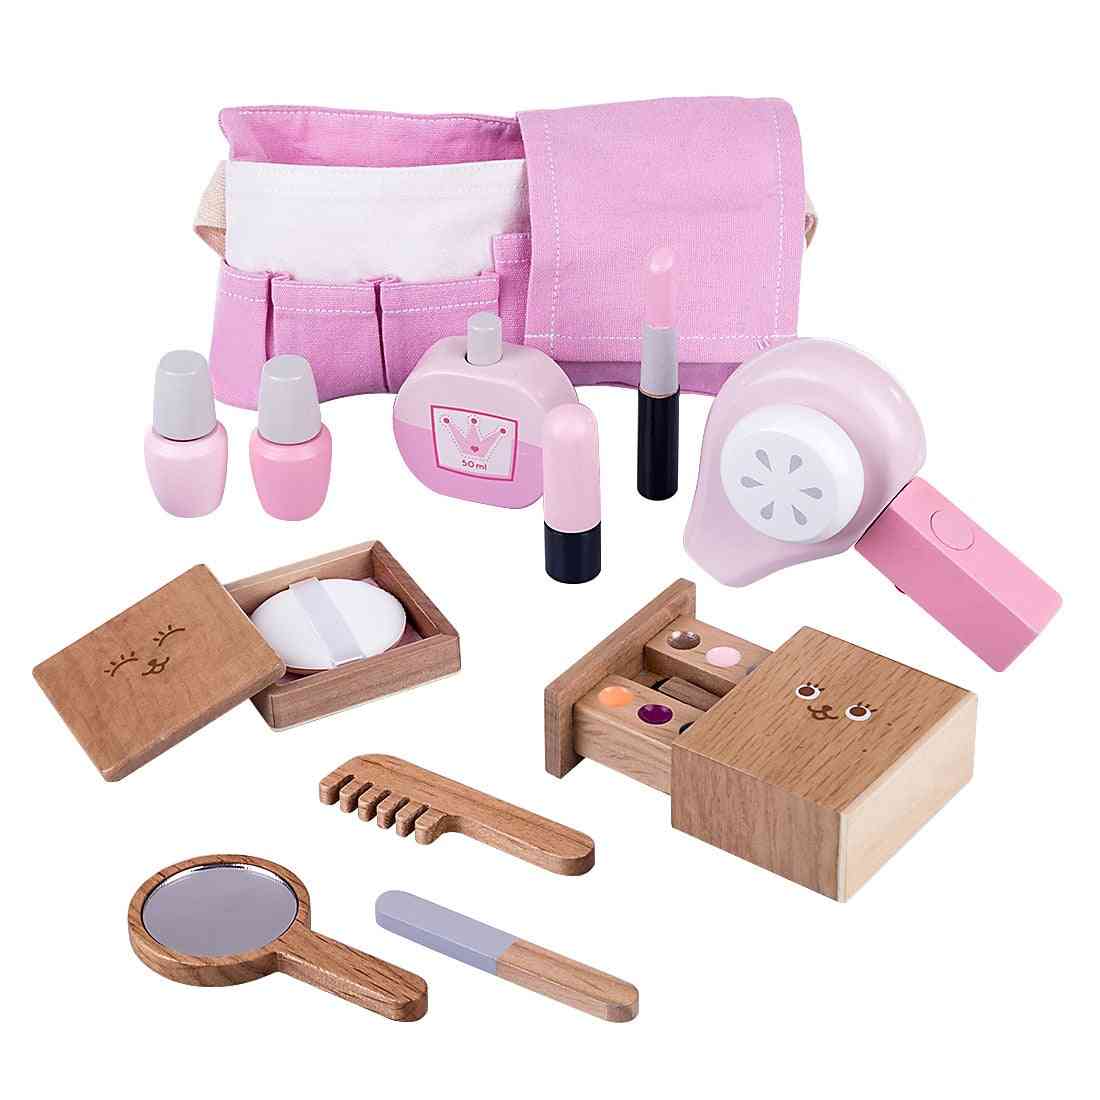 12 piezas de maquillaje de madera para niños, juego de simulación, juguetes de secador de pelo de simulación para niñas y niños